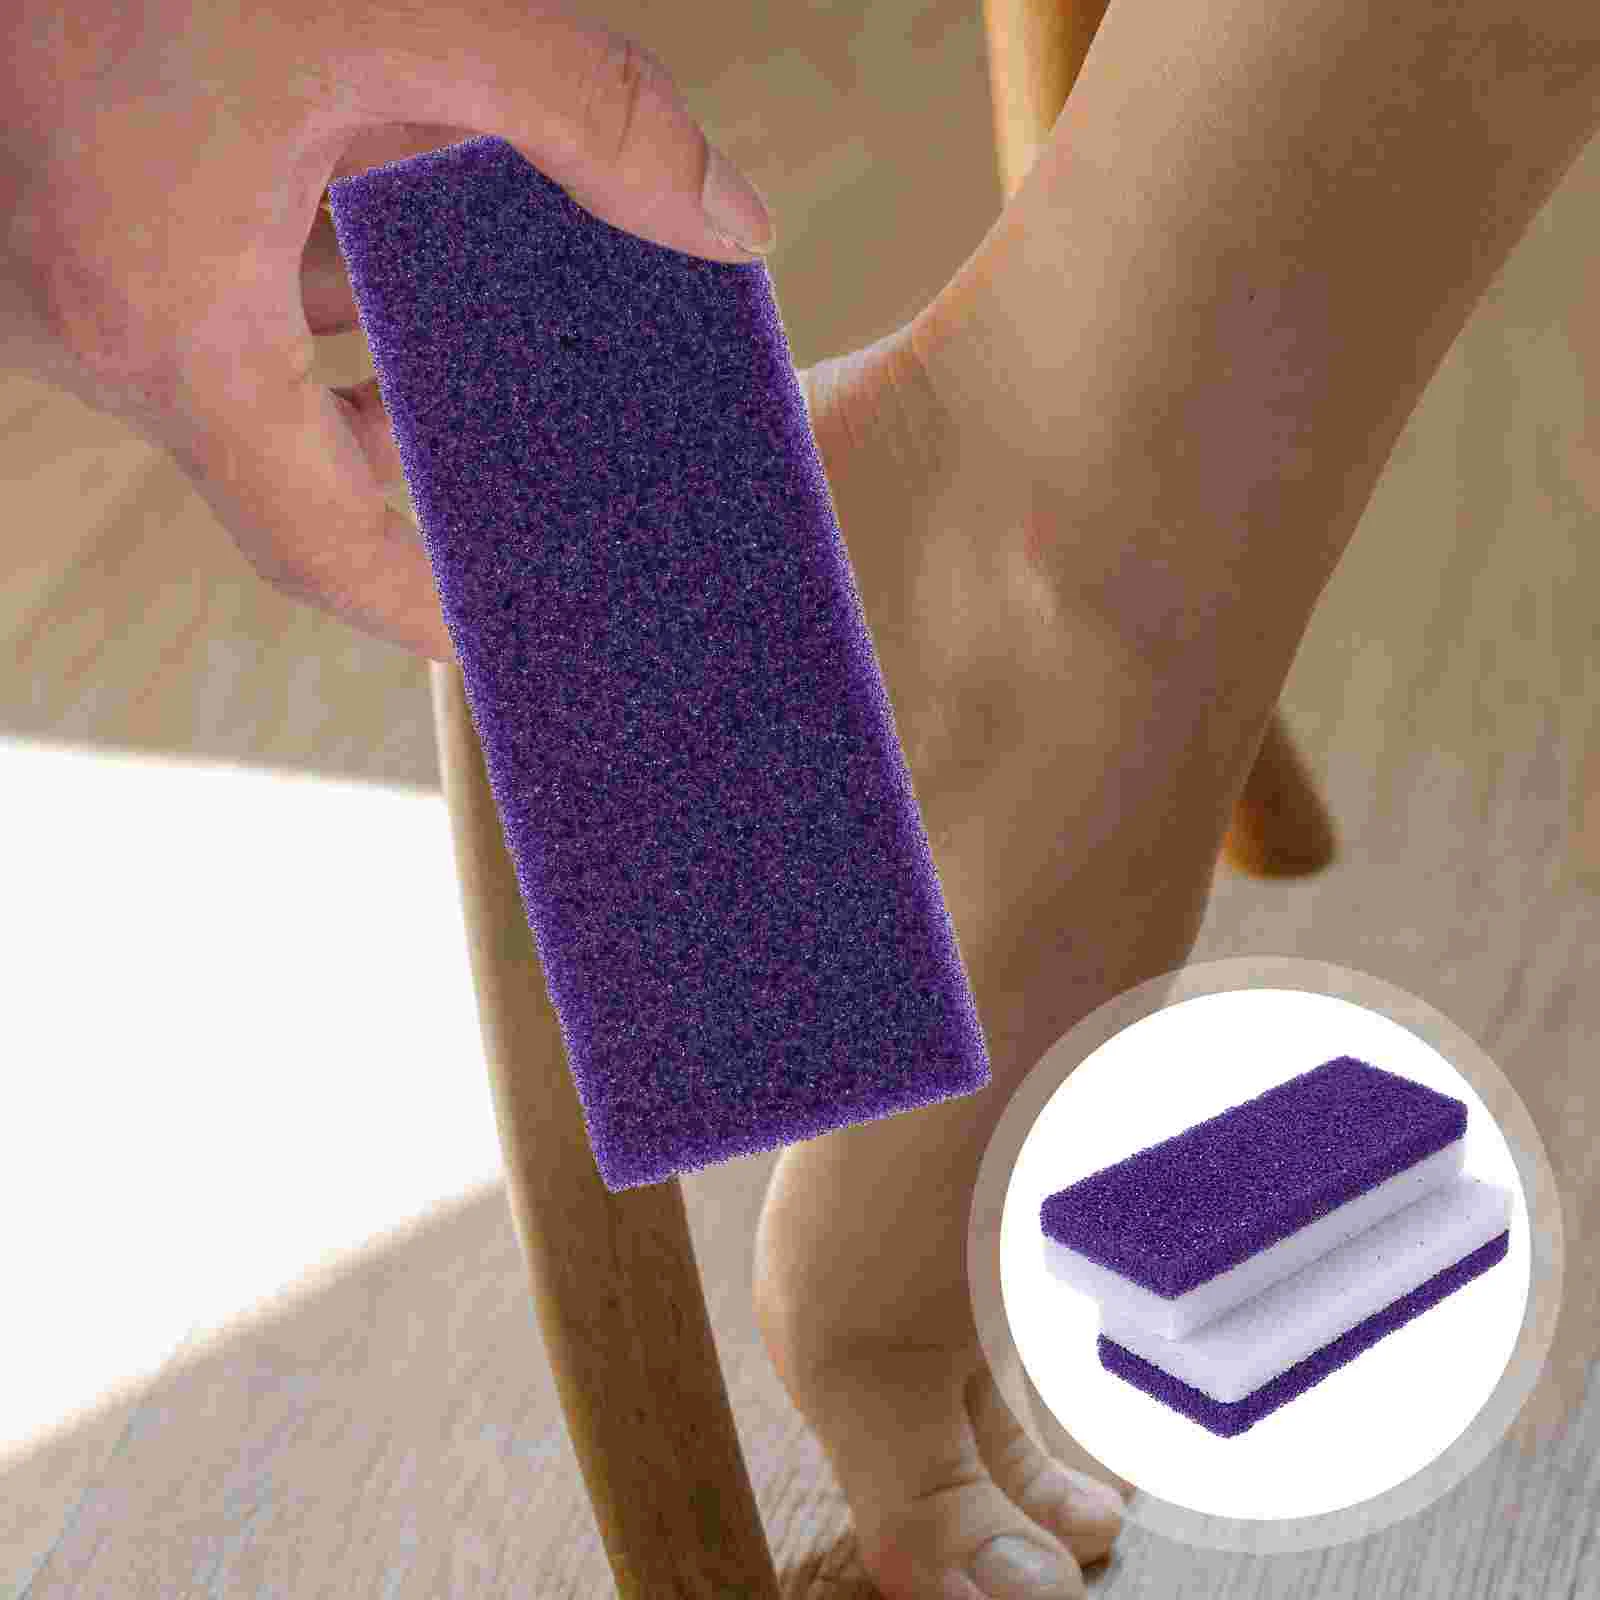 

2 Pcs Foot Rasp Scraper Callus Remove Stone Pedicure Cleaning Kits Scrubber Nursing File Remover Dead Skin Grater Pumice